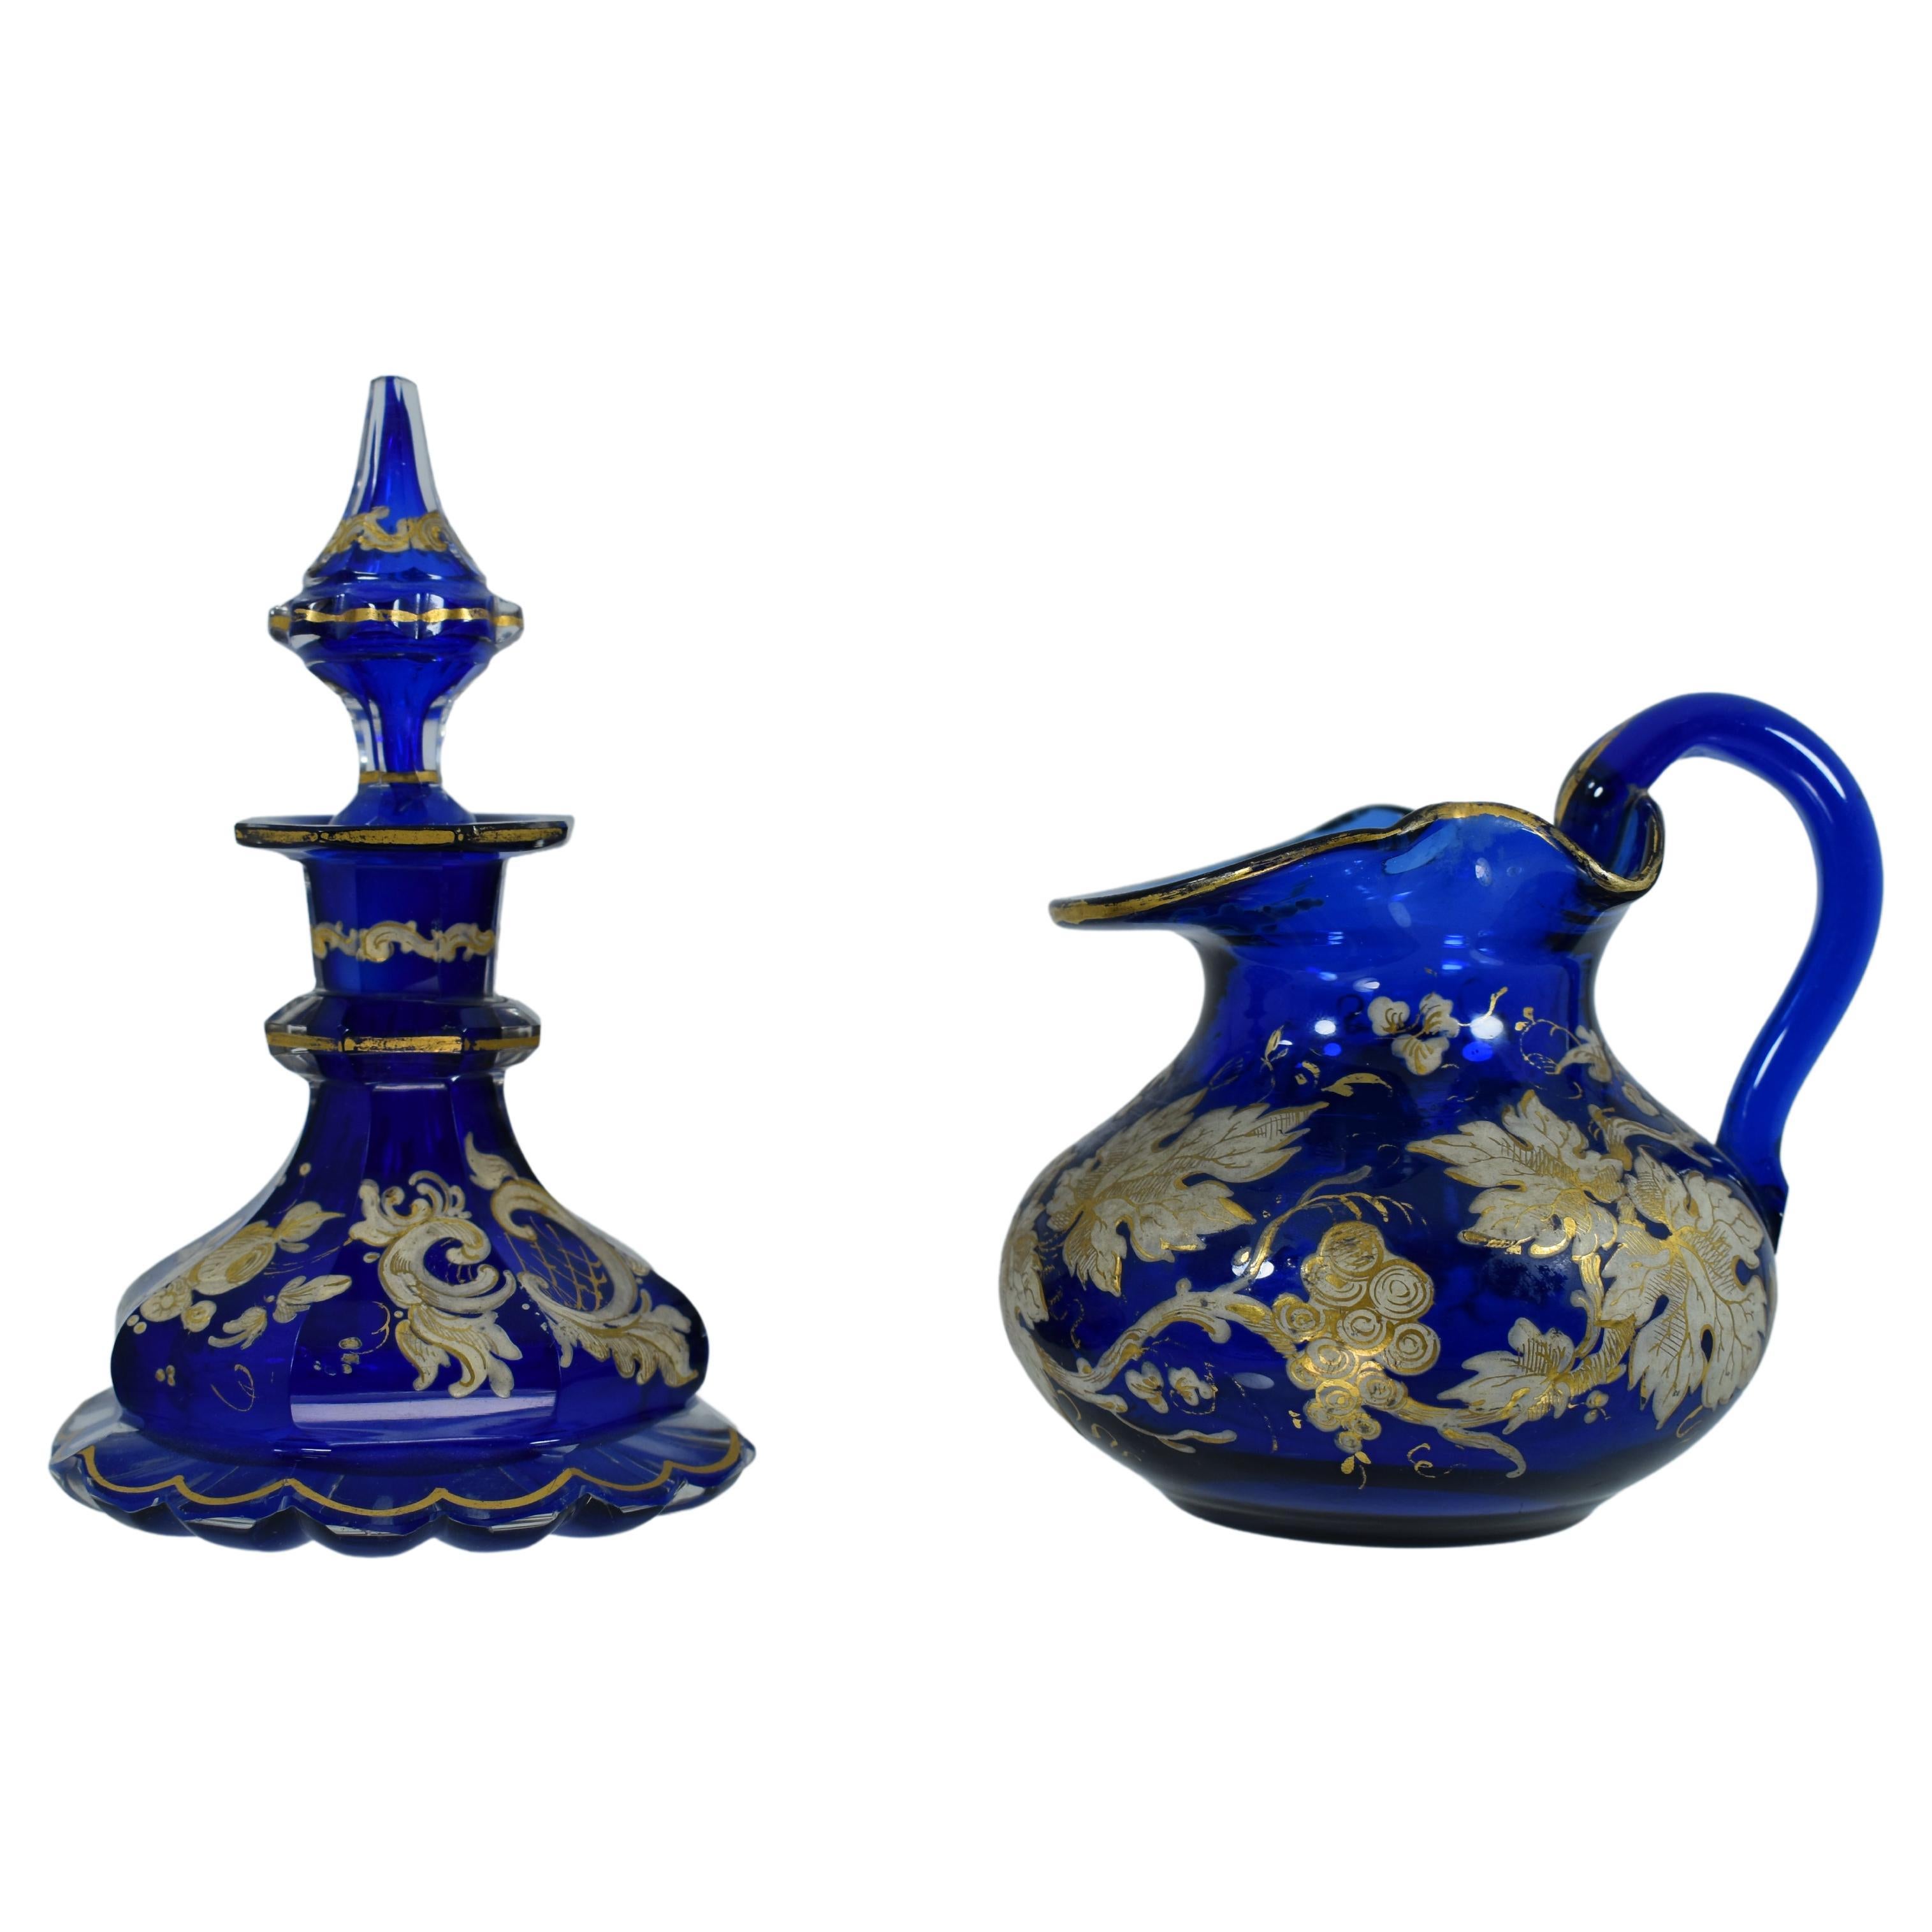 Antike böhmische Parfümflasche und Krug aus kobaltblau emailliertem Glas, 19. Jahrhundert